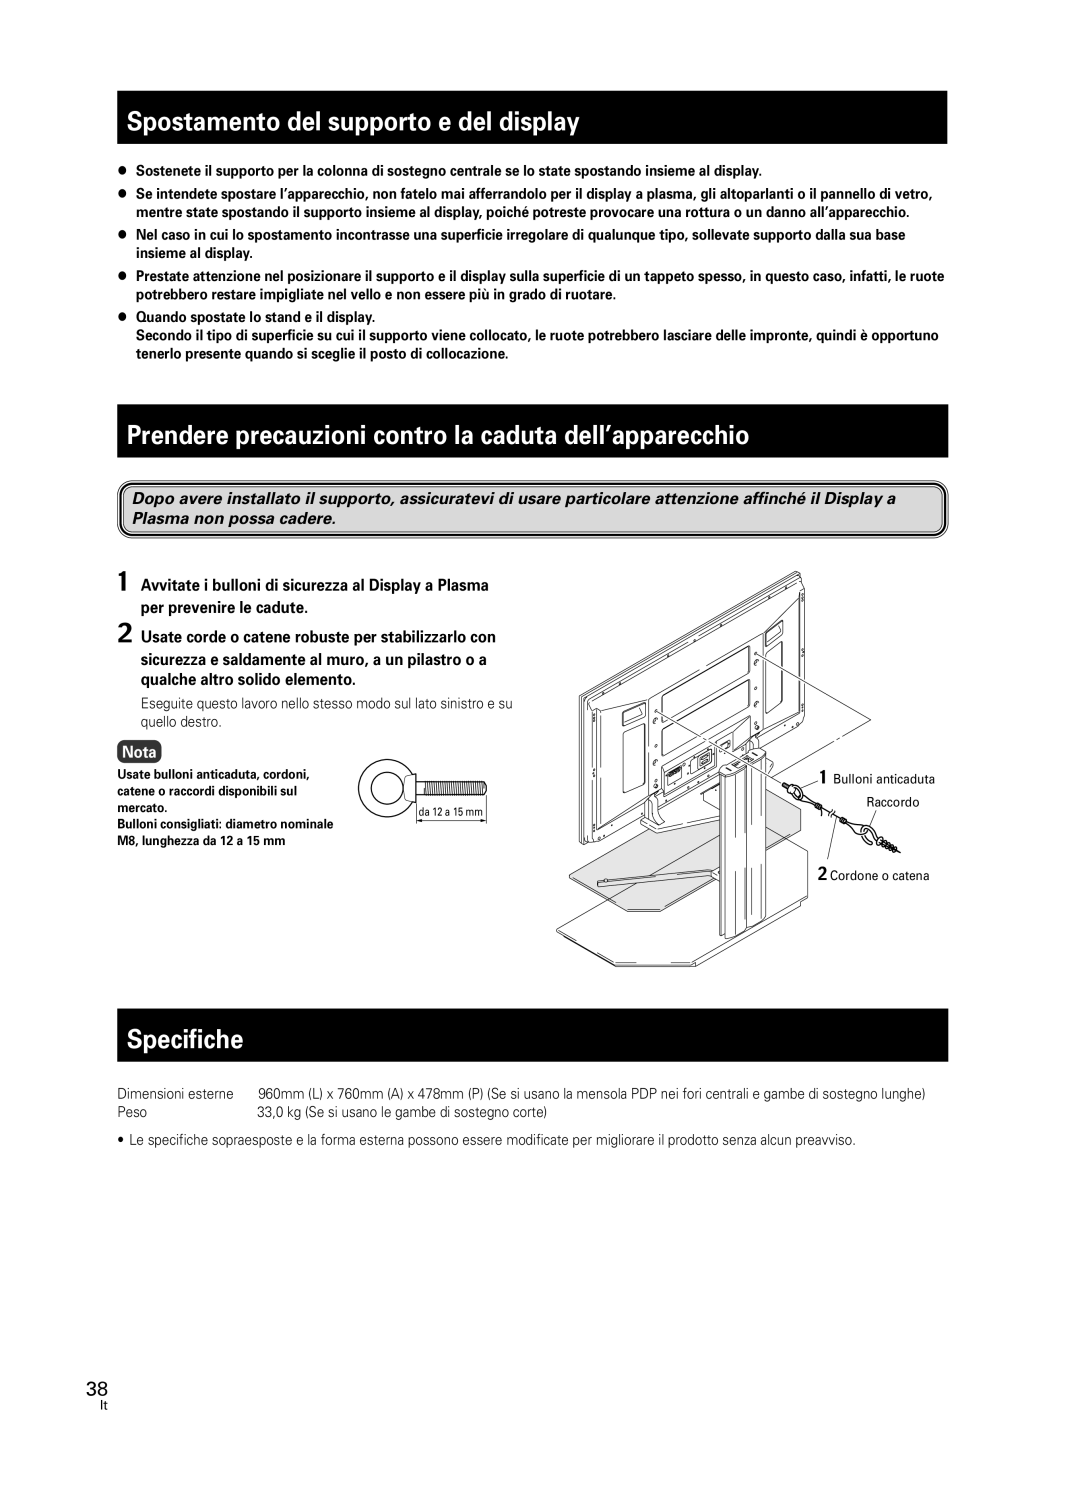 Pioneer PDK-FS05 manual Spostamento del supporto e del display, Specifiche, Nota 